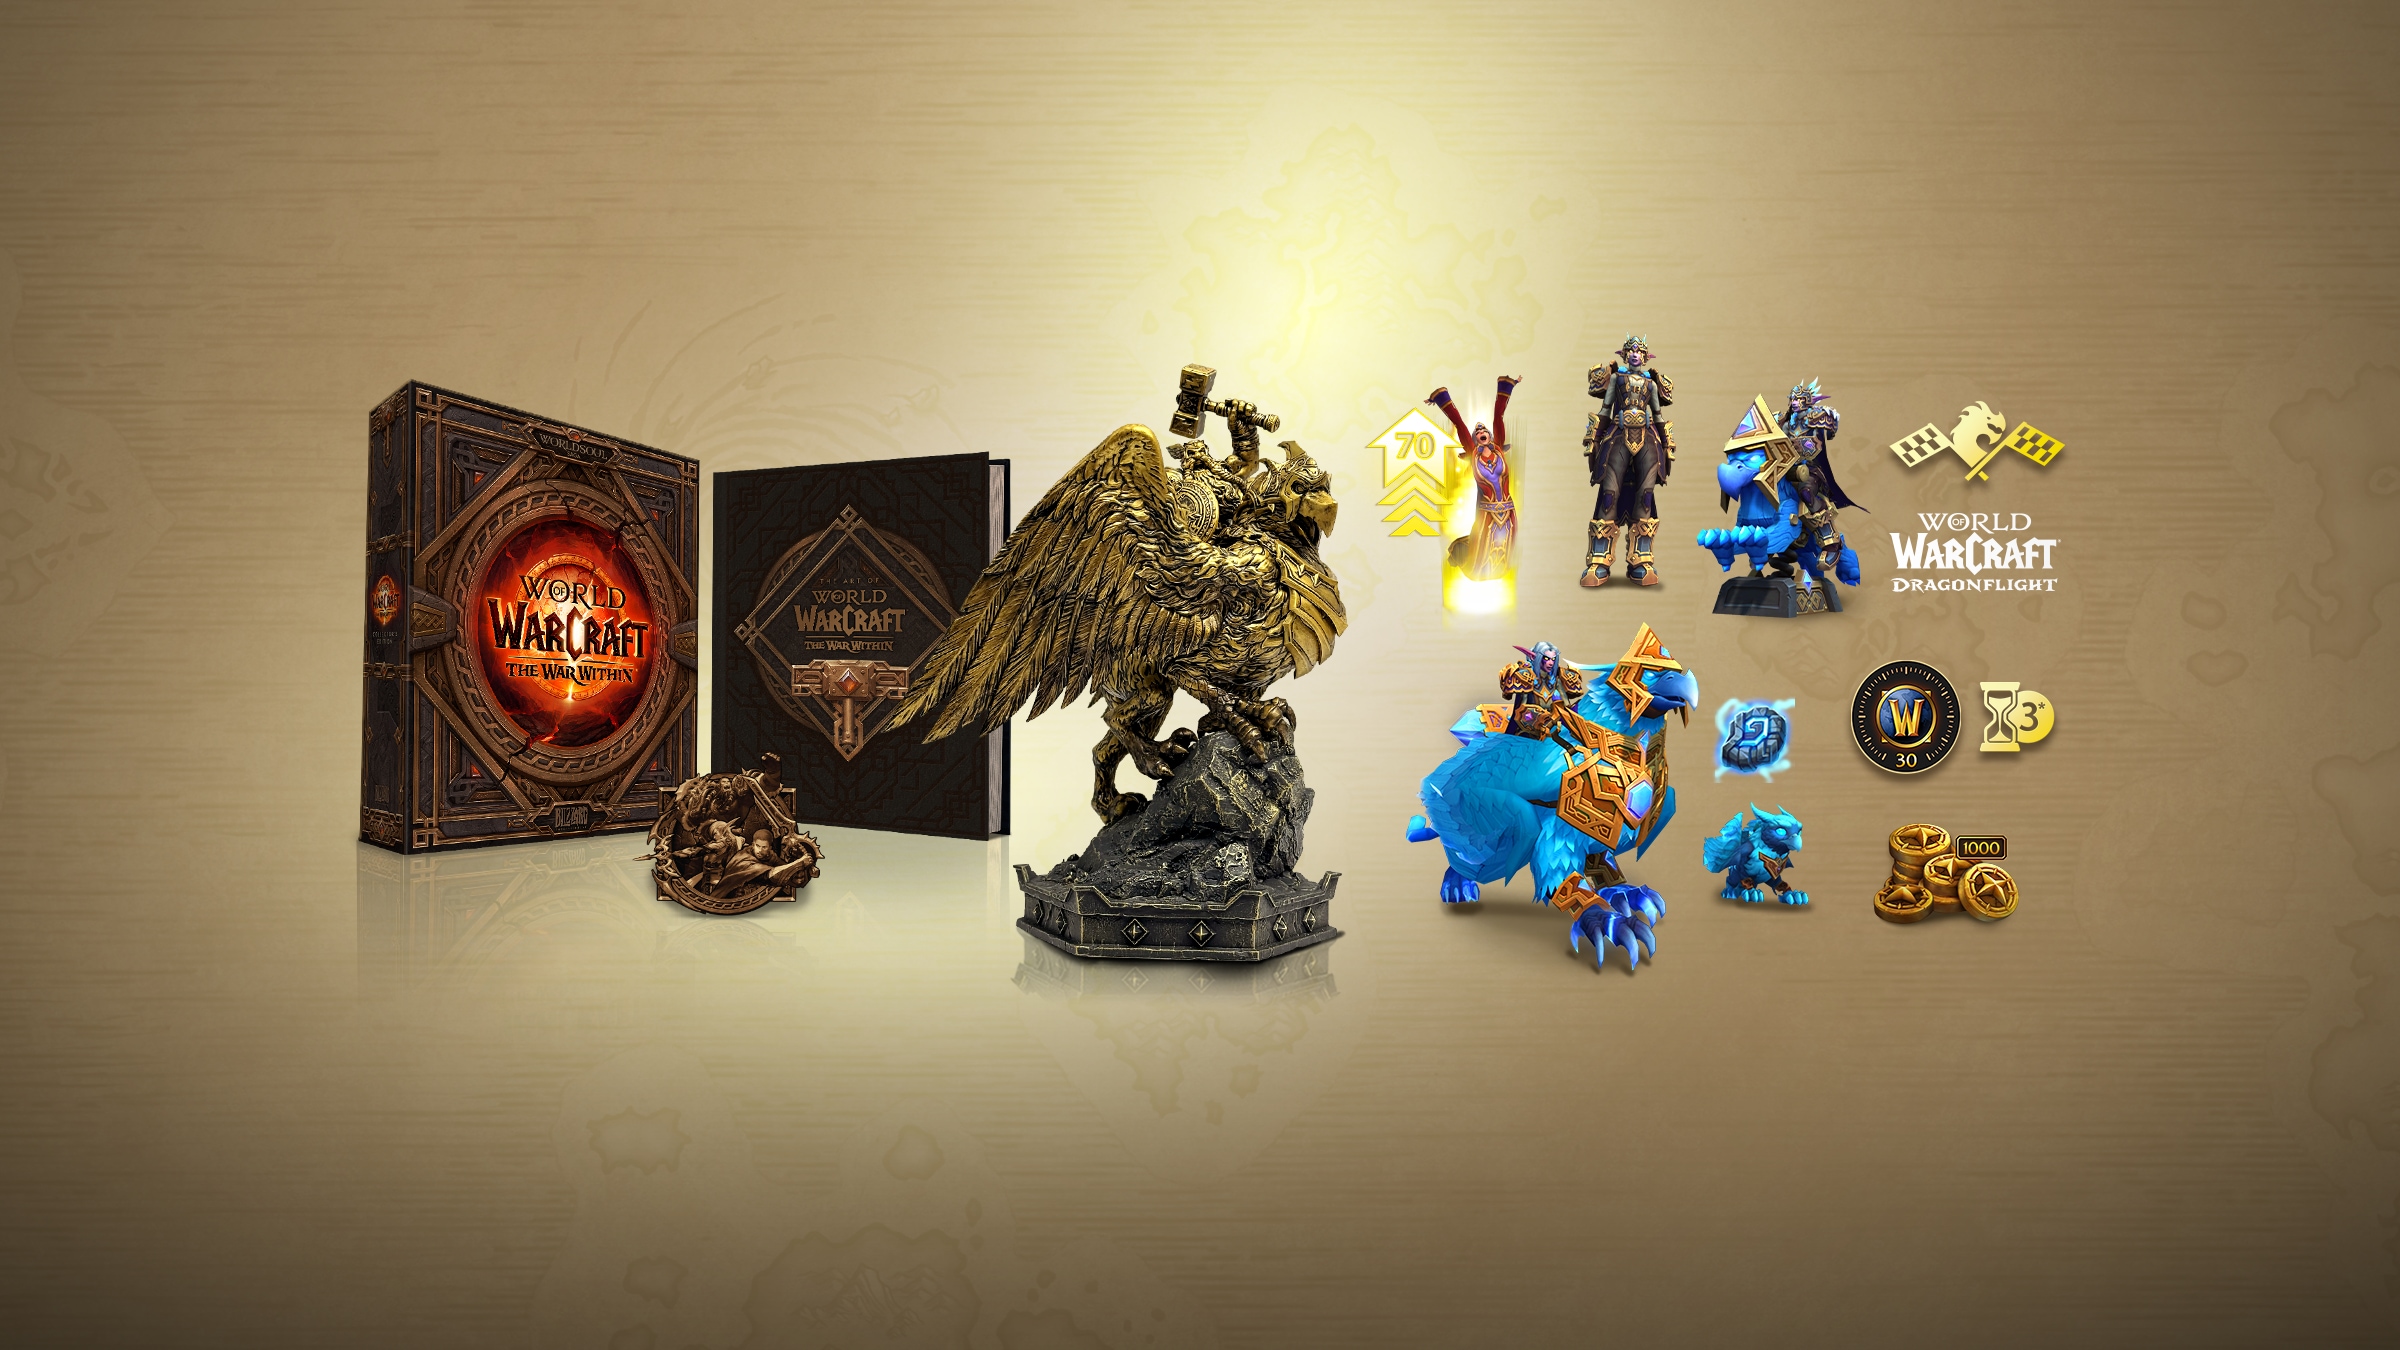 Adquira a Collector's Edition do 20º Aniversário de World of Warcraft®: The War Within™ antecipadamente